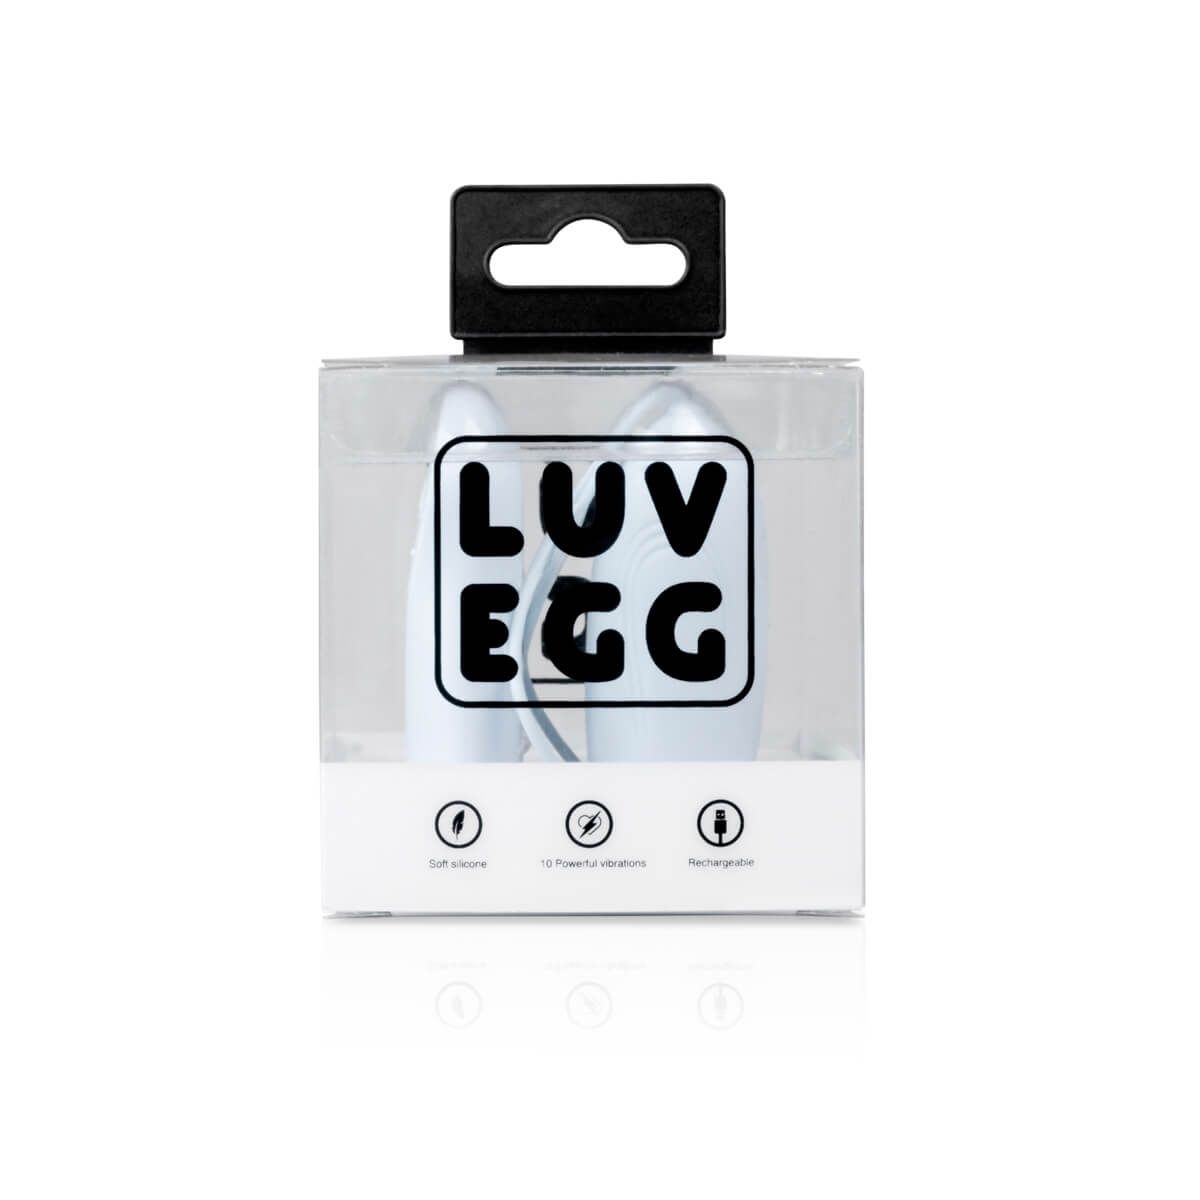 LUV EGG - akkus, rádiós vibrációs tojás (kék)